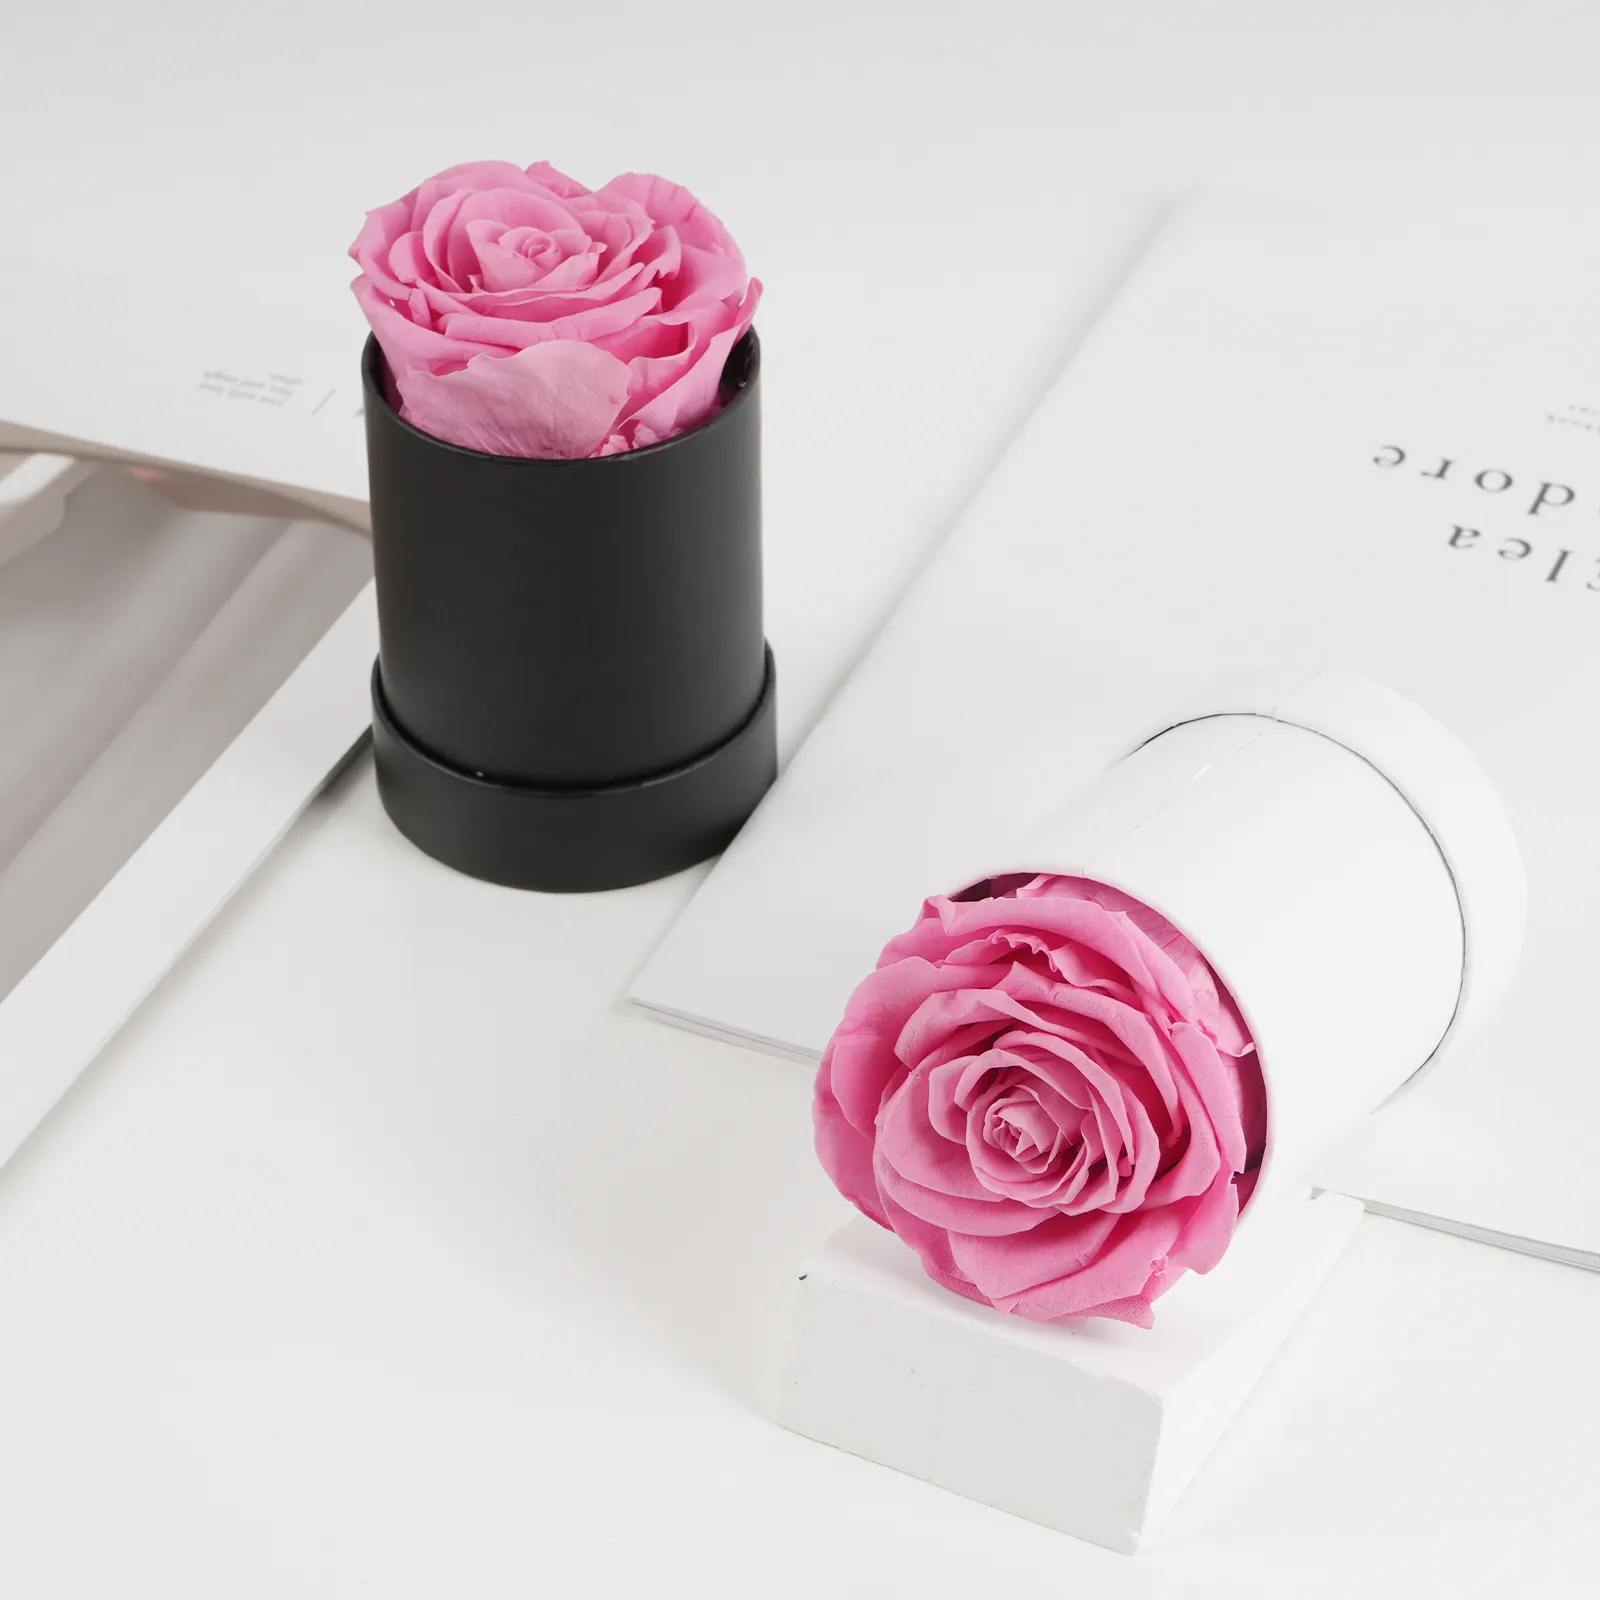 Hadiah hari ibu merah muda tunggal mawar selamanya hadiah pernikahan hadiah bunga asli diawetkan sentuhan mawar abadi